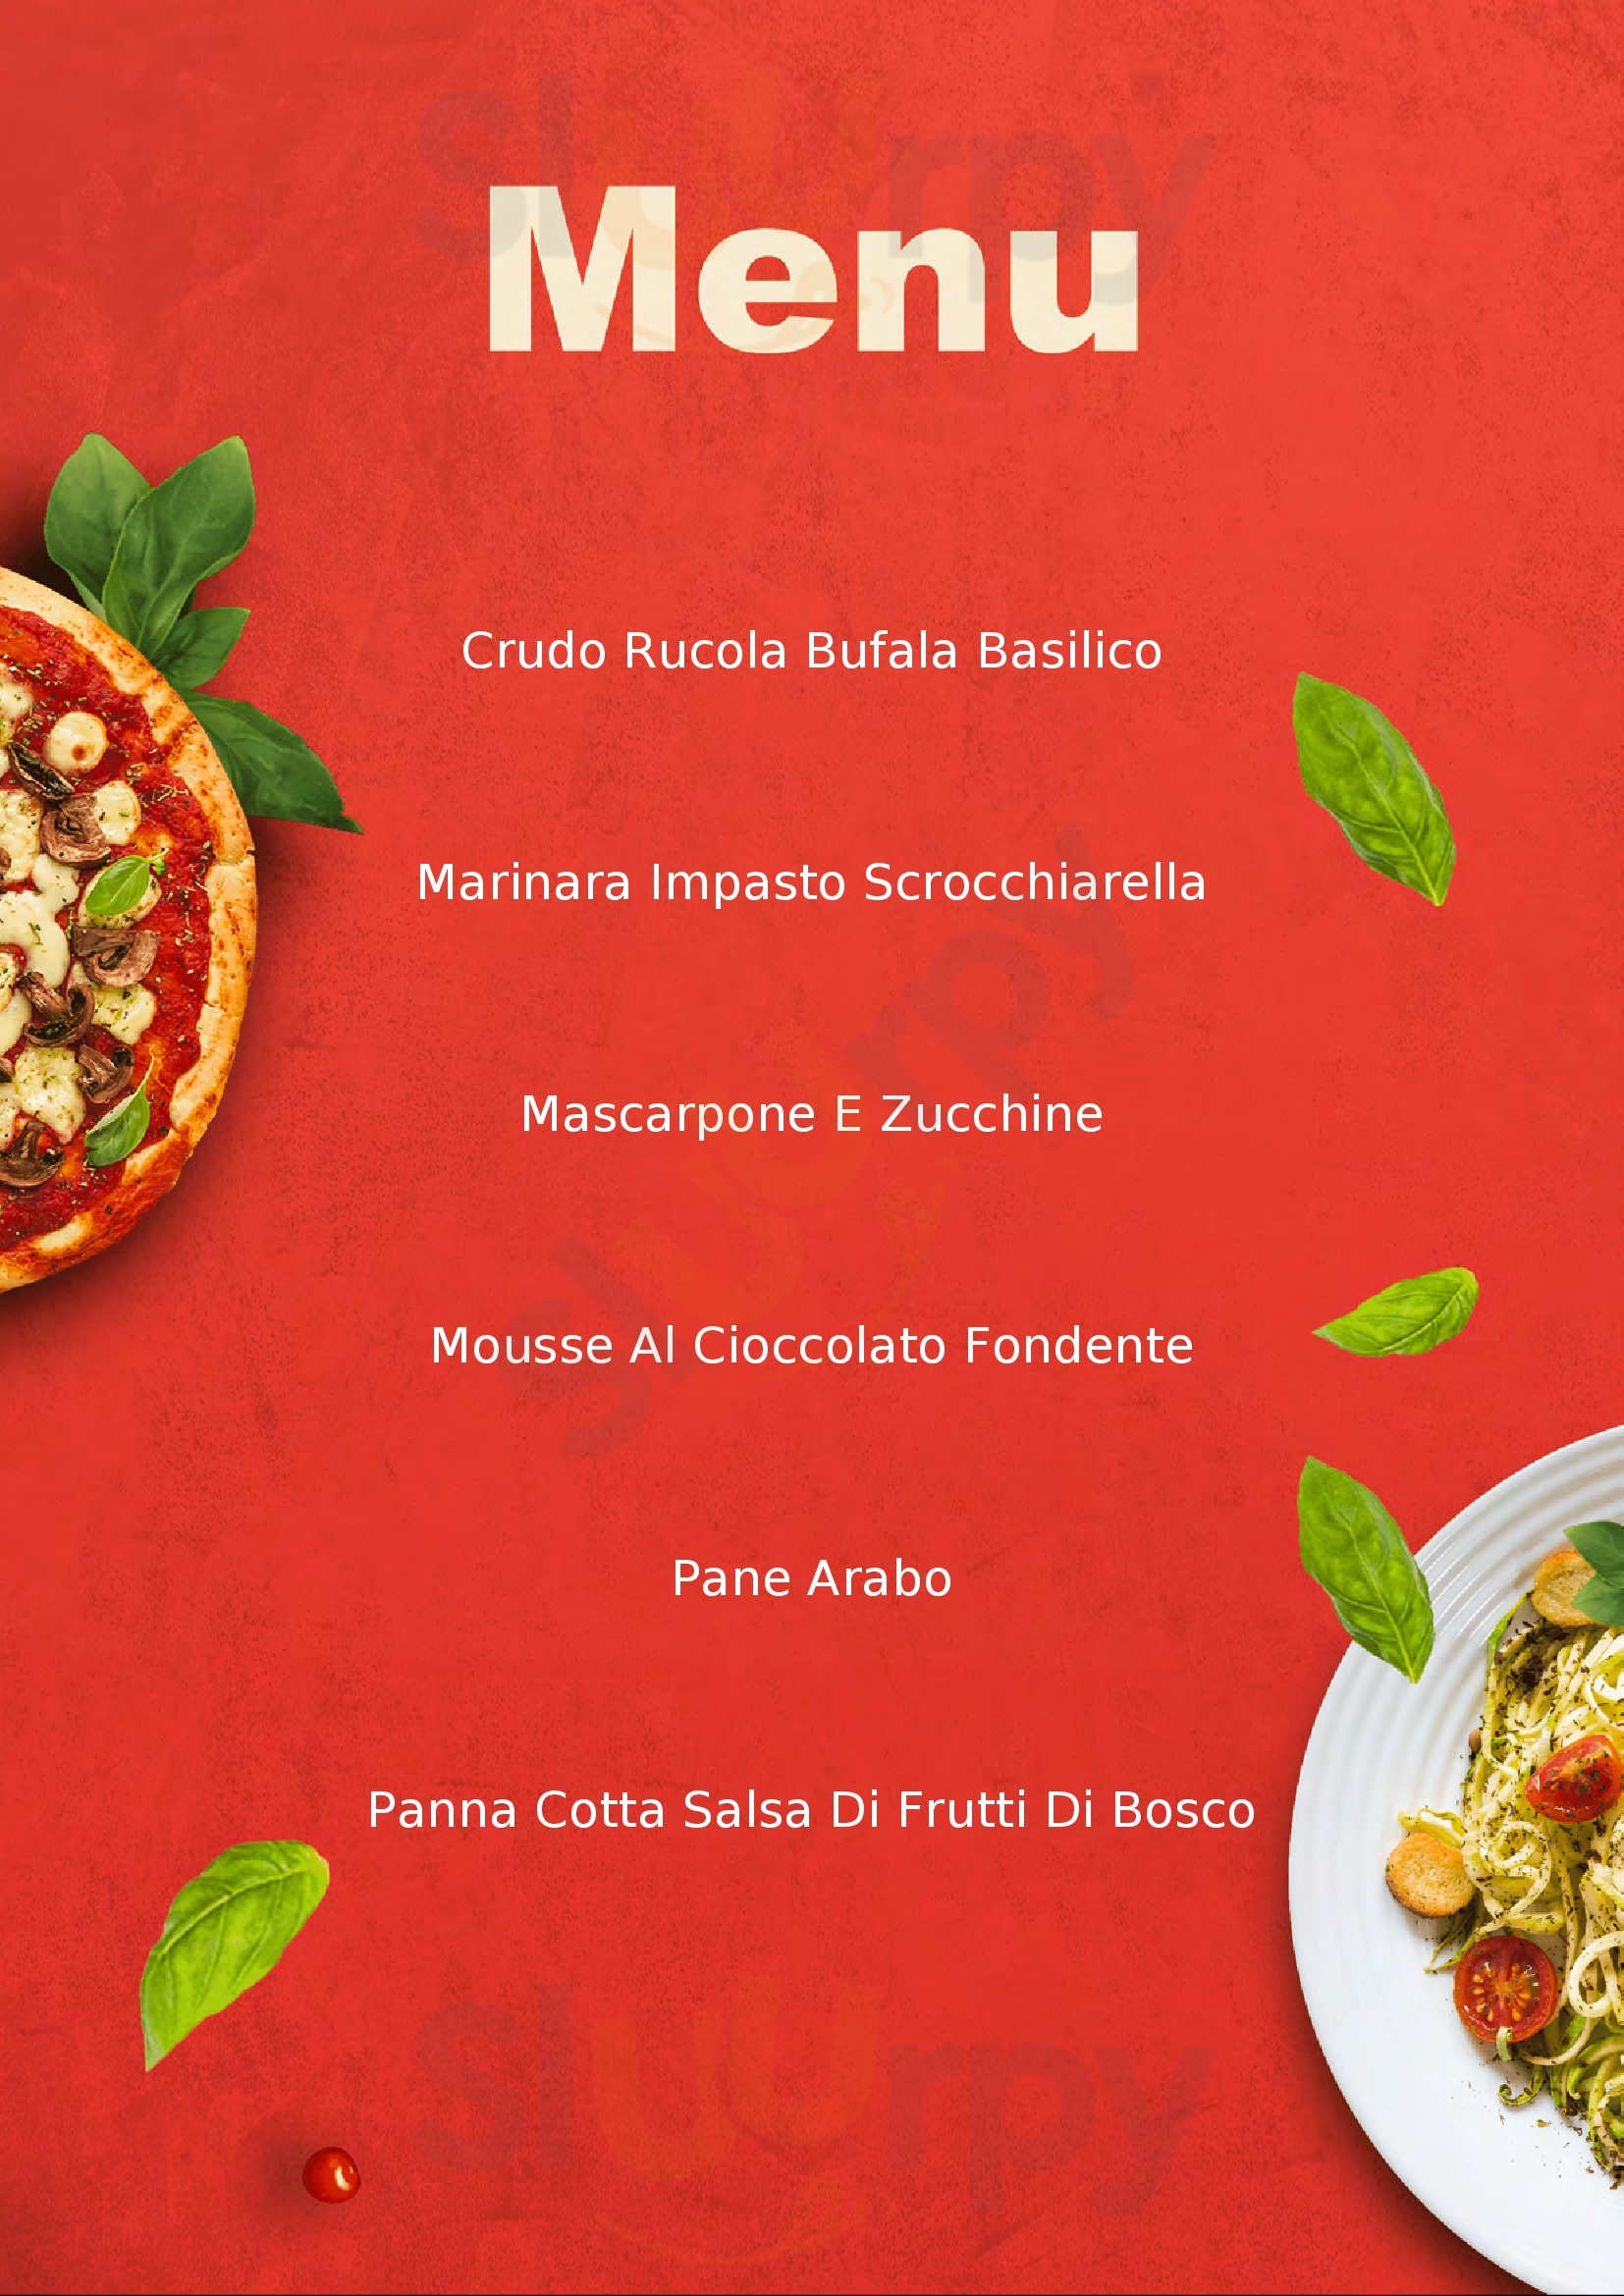 Pizza E Fichi Capannori menù 1 pagina